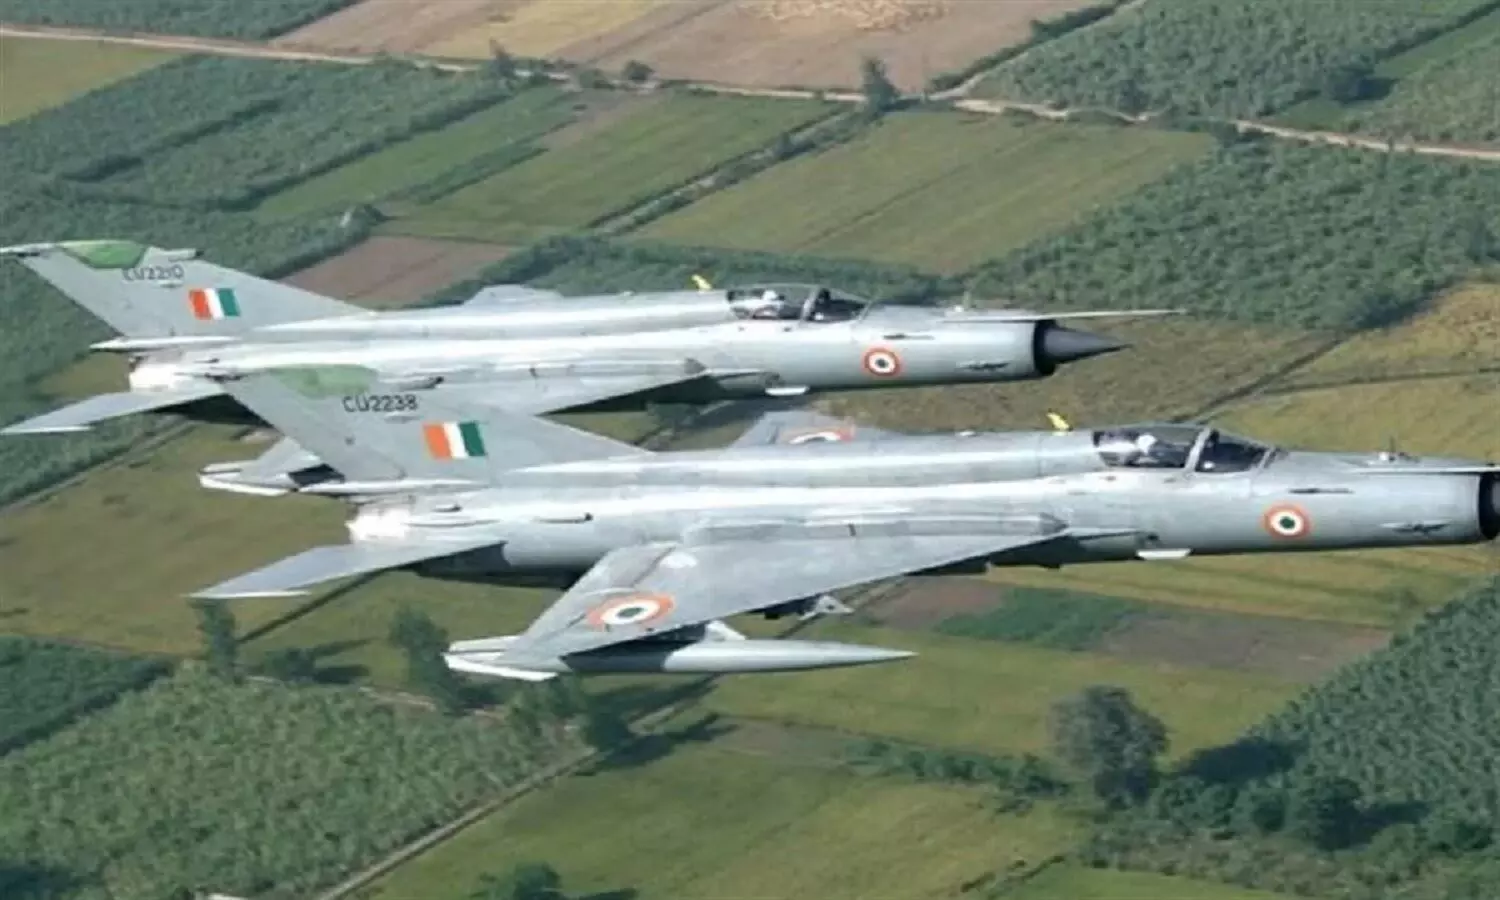 IAF To Retire MiG-21: 30 सितंबर तक रिटायर होंगे वायु सेना के मिग-21 विमान, इस वजह से लिए जा रहे निर्णय